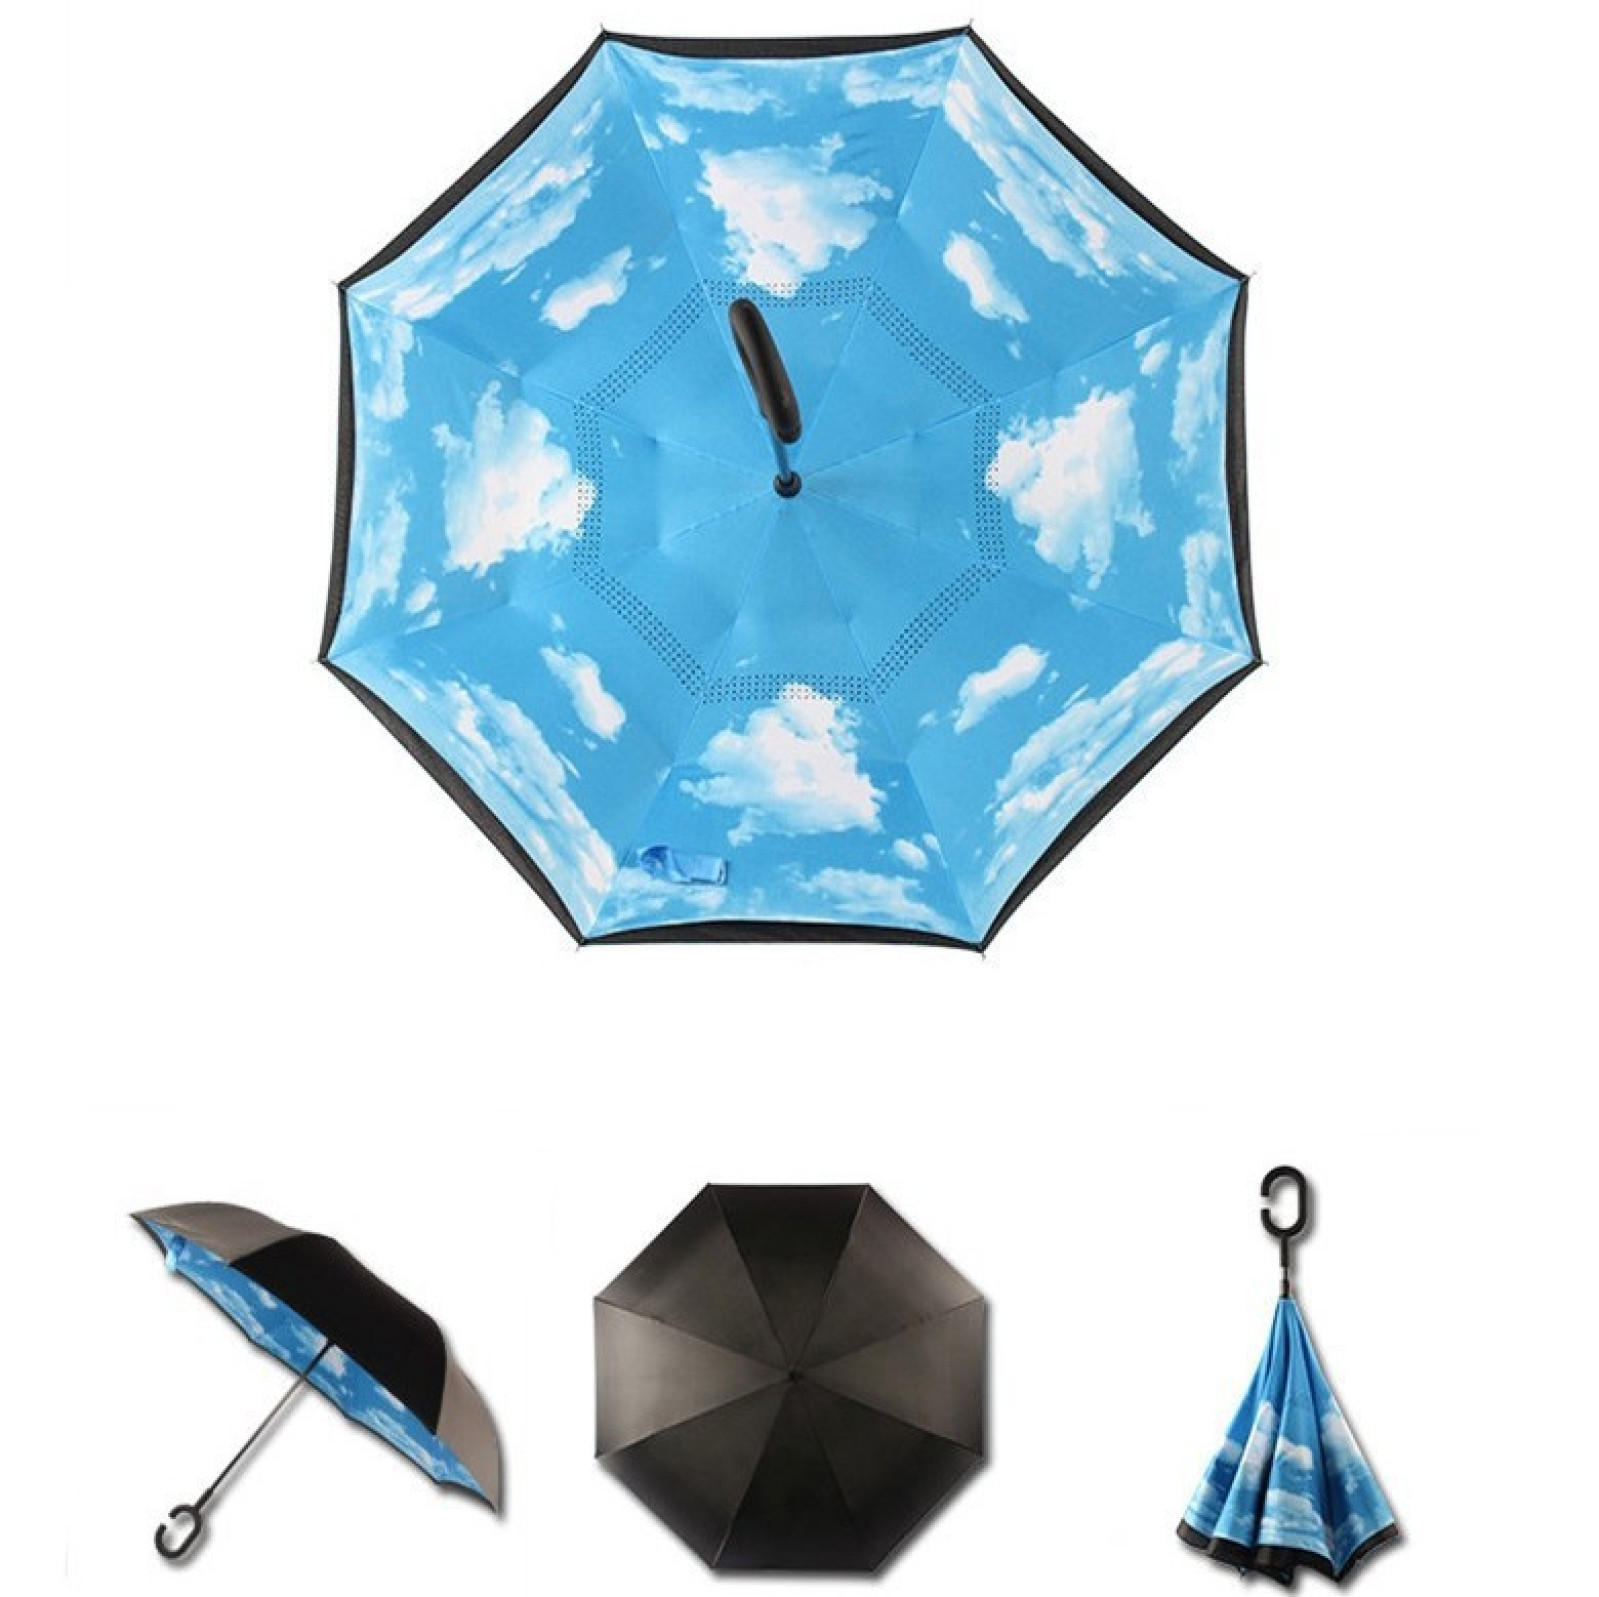 Зонт обратного сложения, антизонт, умный зонт, зонт наоборот Up Brella Голубое Небо 151015